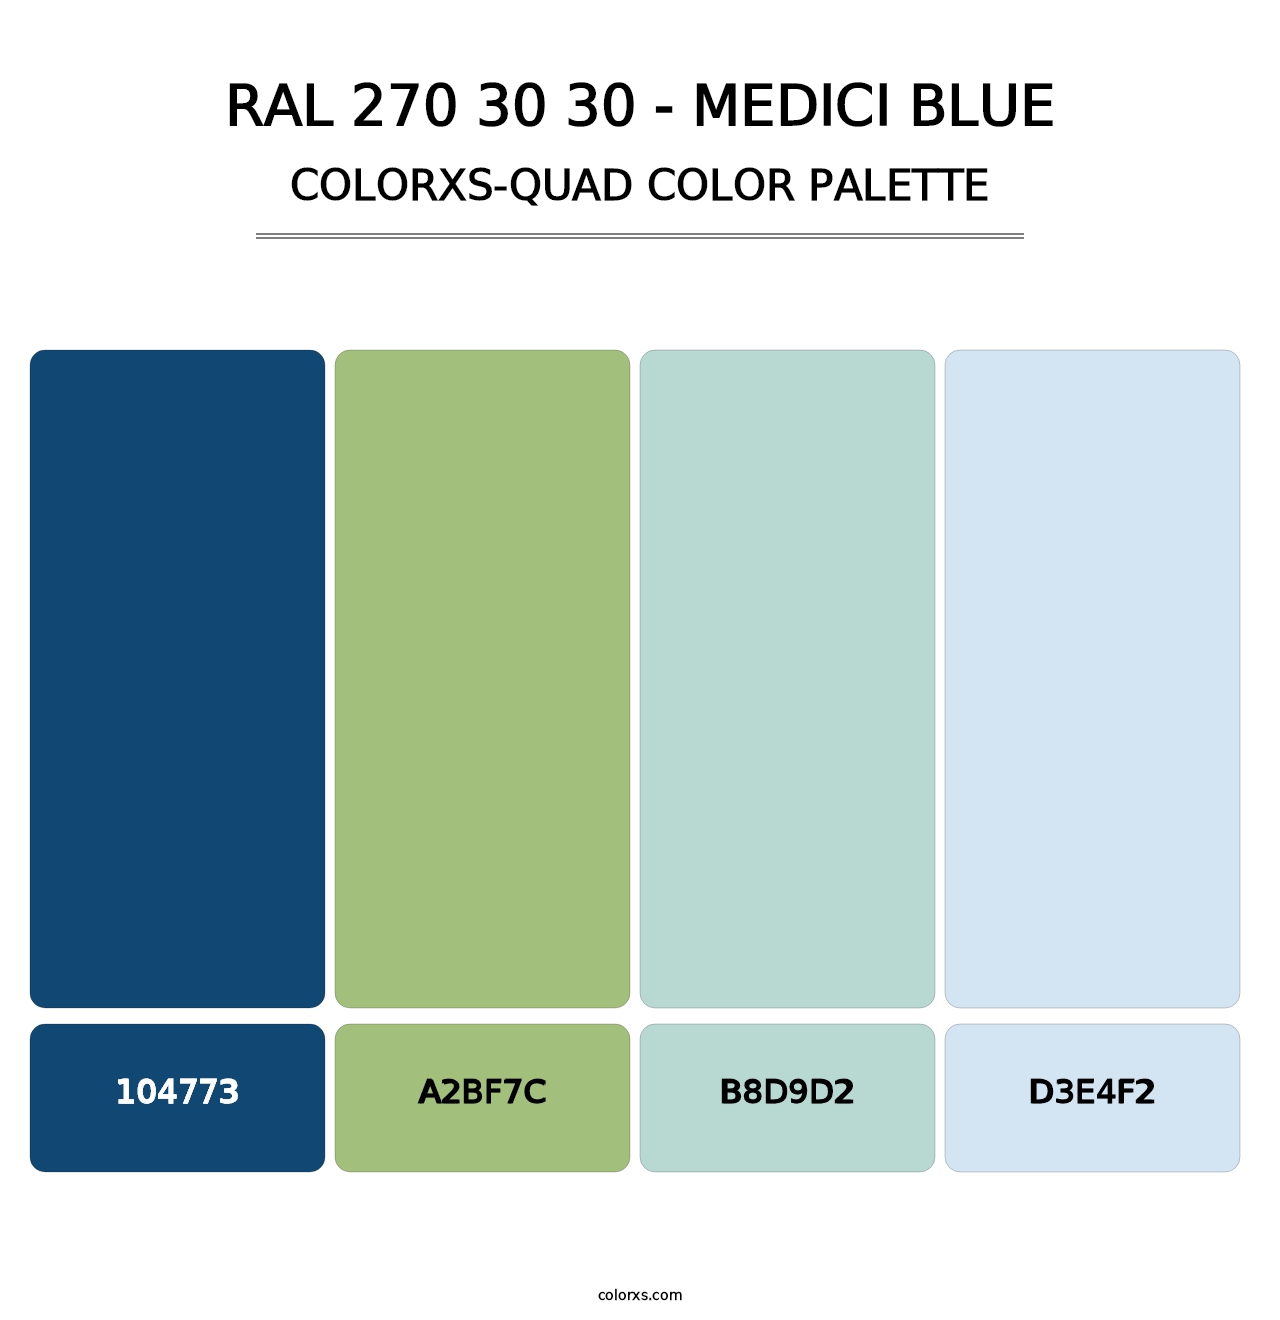 RAL 270 30 30 - Medici Blue - Colorxs Quad Palette